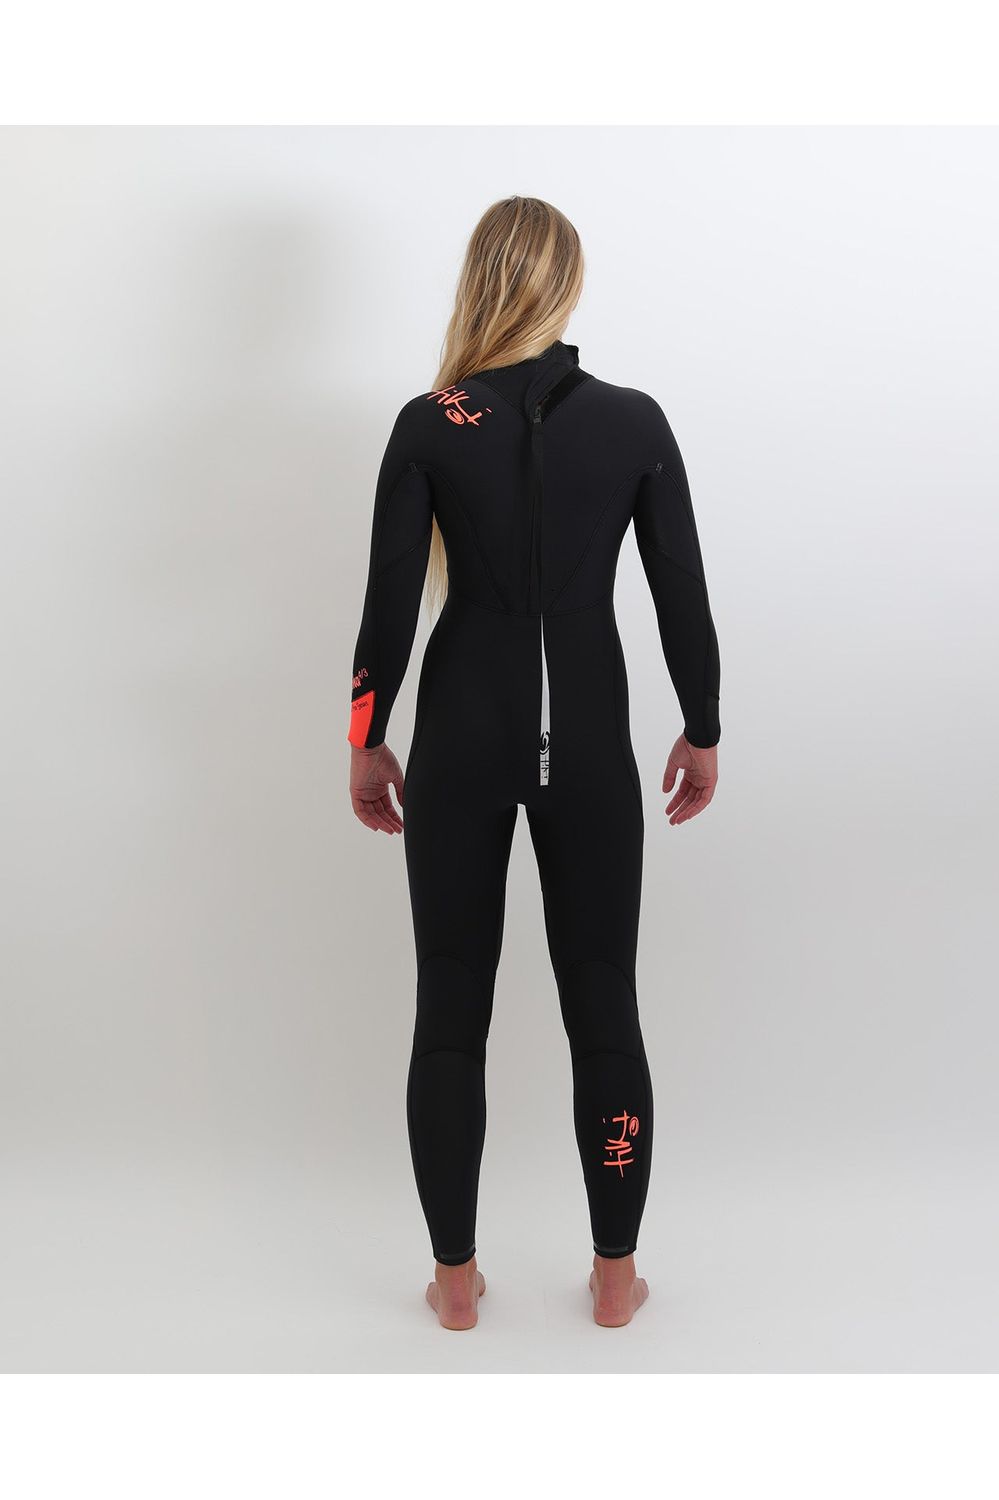 Tiki Ladies Zepha2 4/3 Wetsuit GBS - Back Zip - Black/Peach